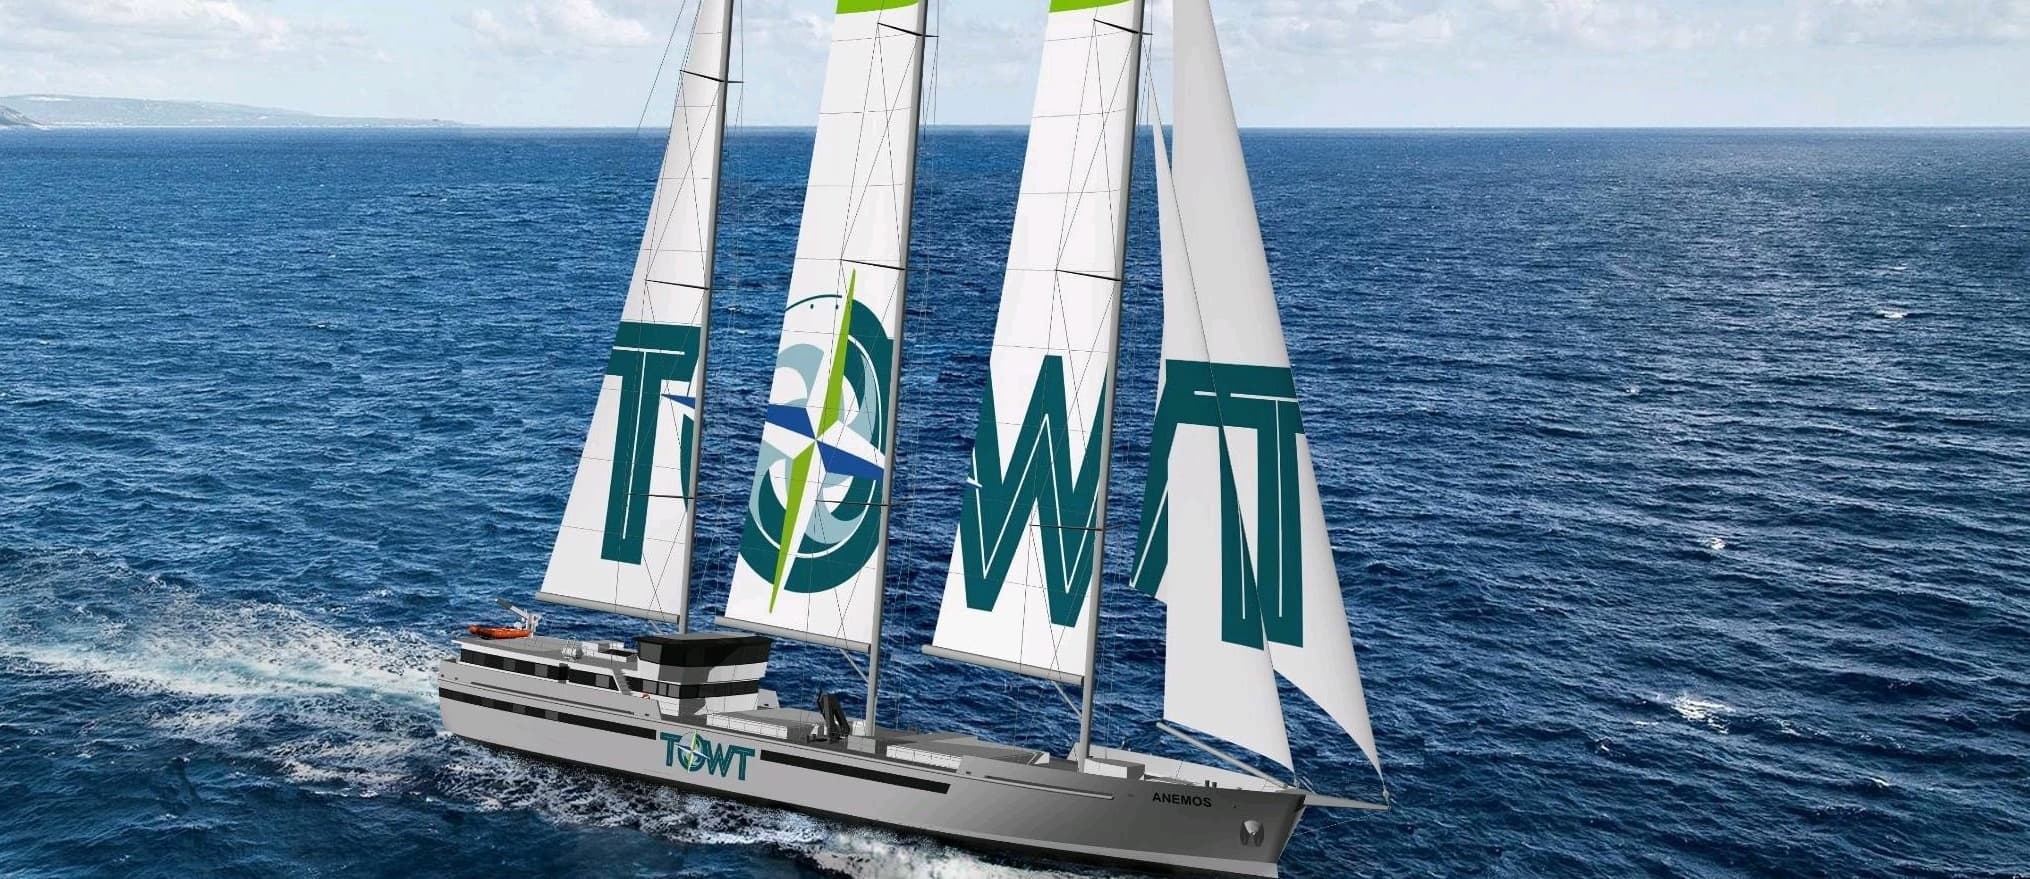 towt commande six voiliers-cargos supplémentaires après avoir levé 25 millions d'euros